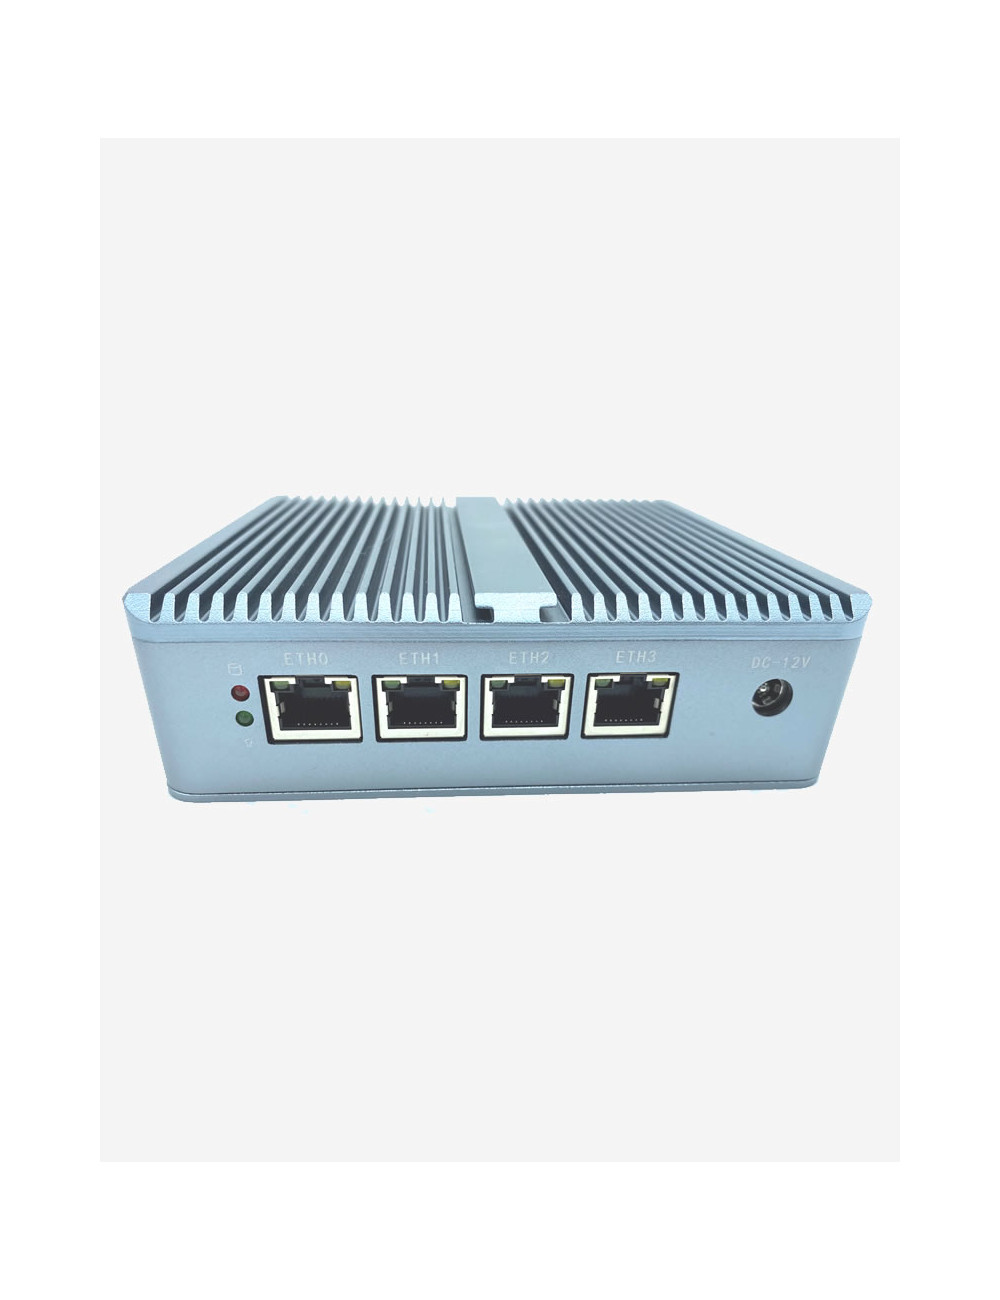 Firewall OPNsense F120 4 ports 2Go SSD 120Go